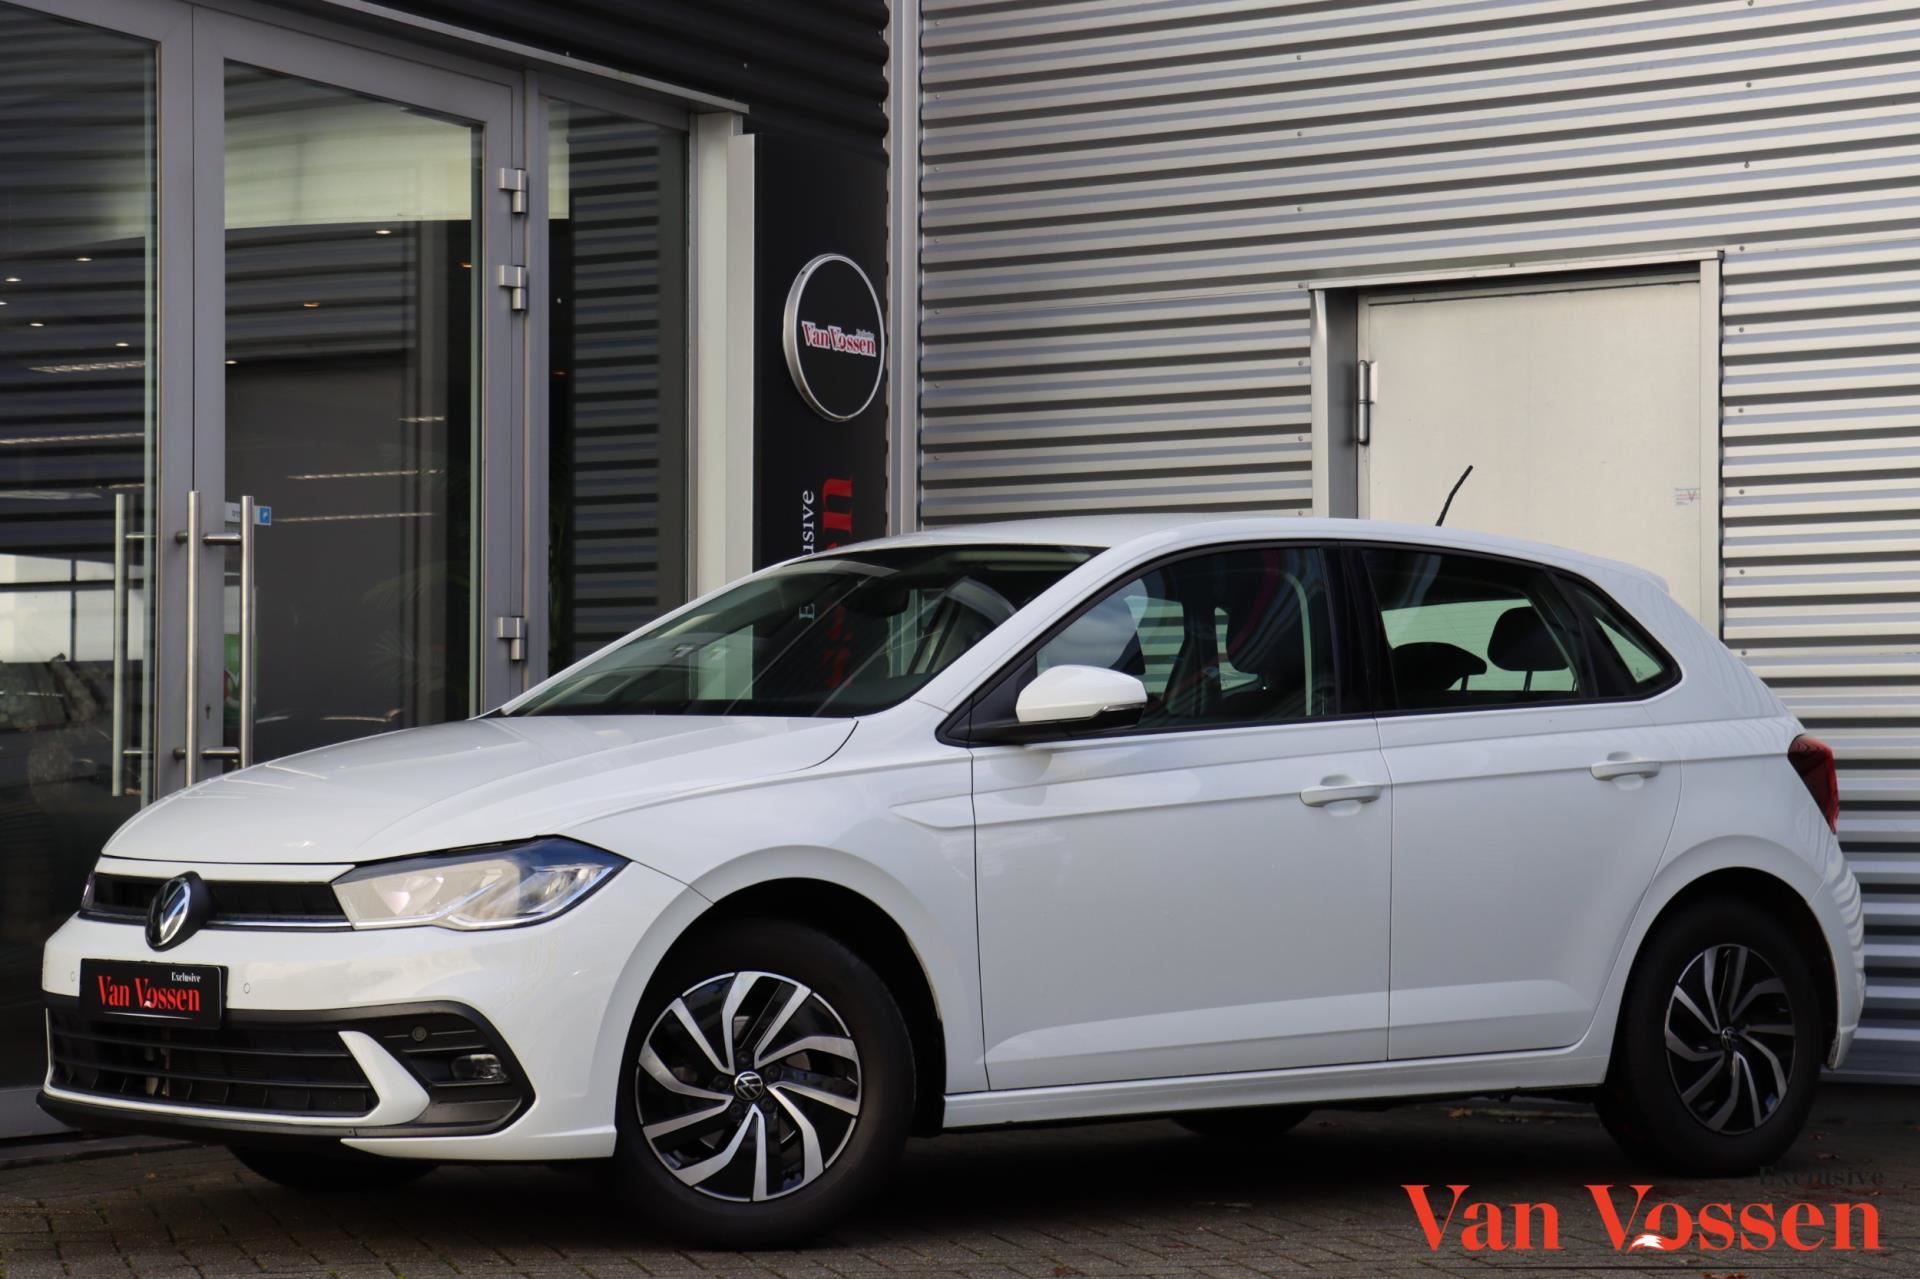 Volkswagen Polo occasion - Van Vossen Exclusive